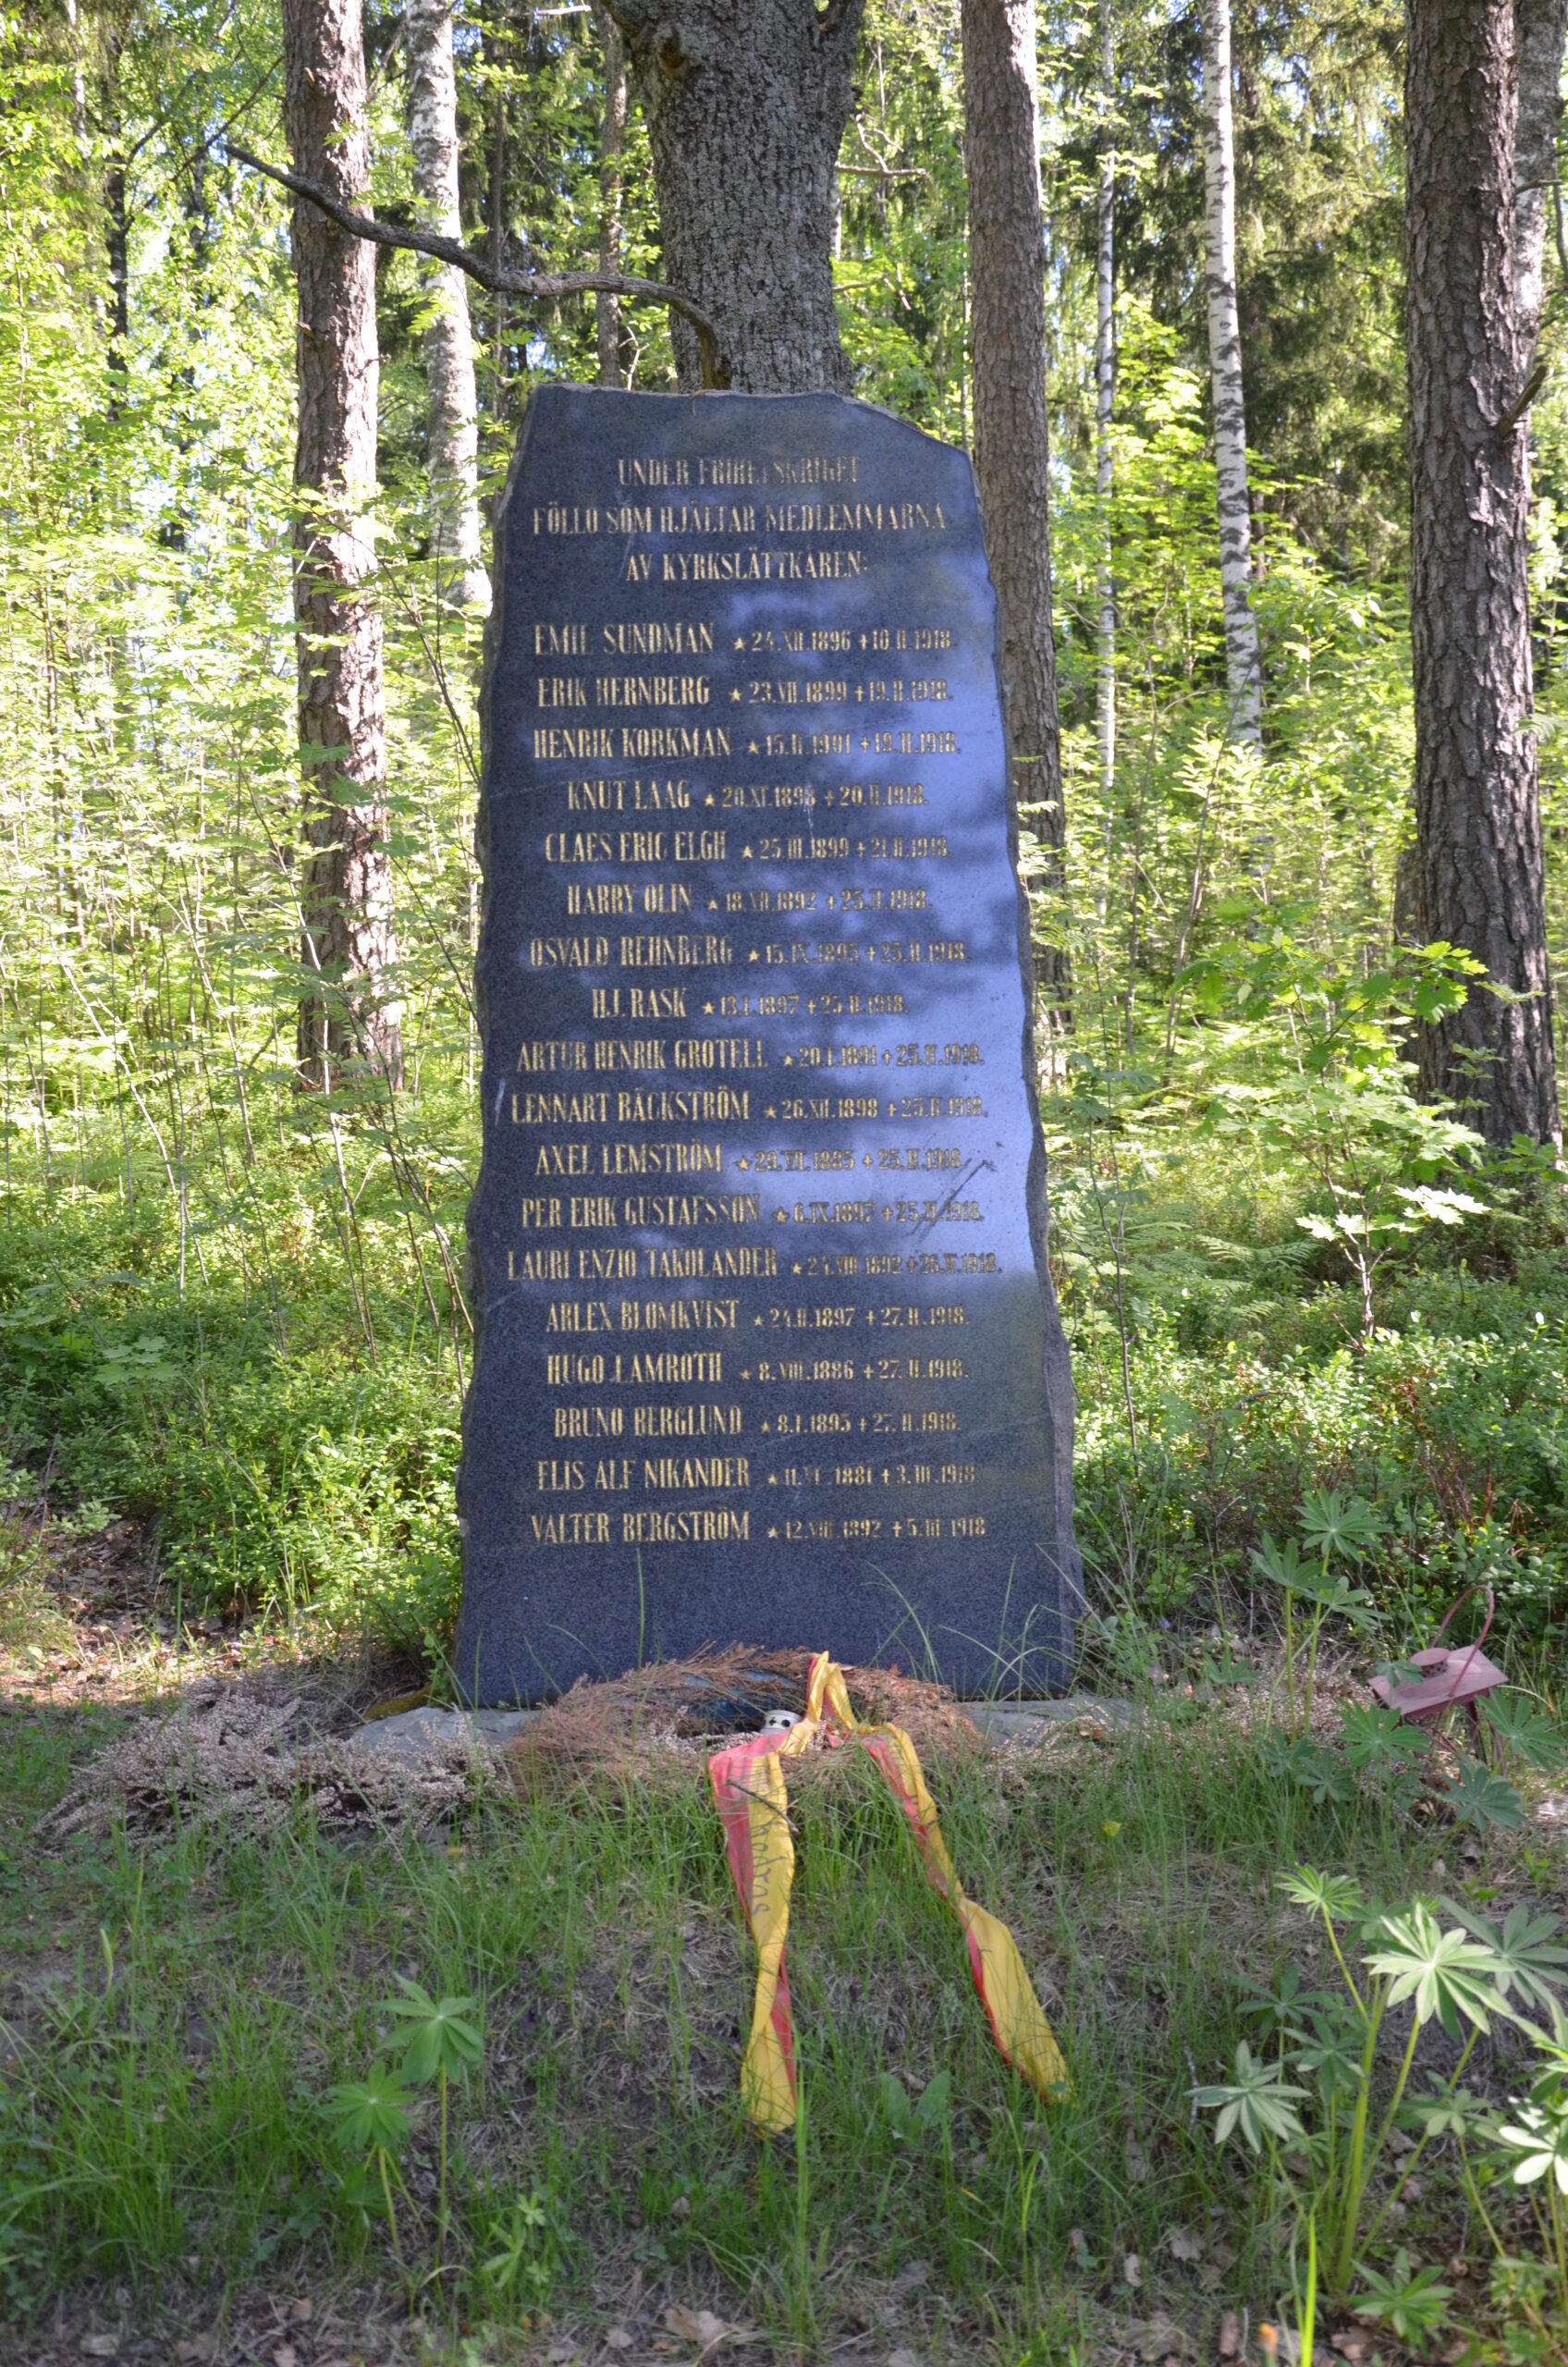 Sigurdsin taisteluissa 1918 kuolleiden muistomerkki